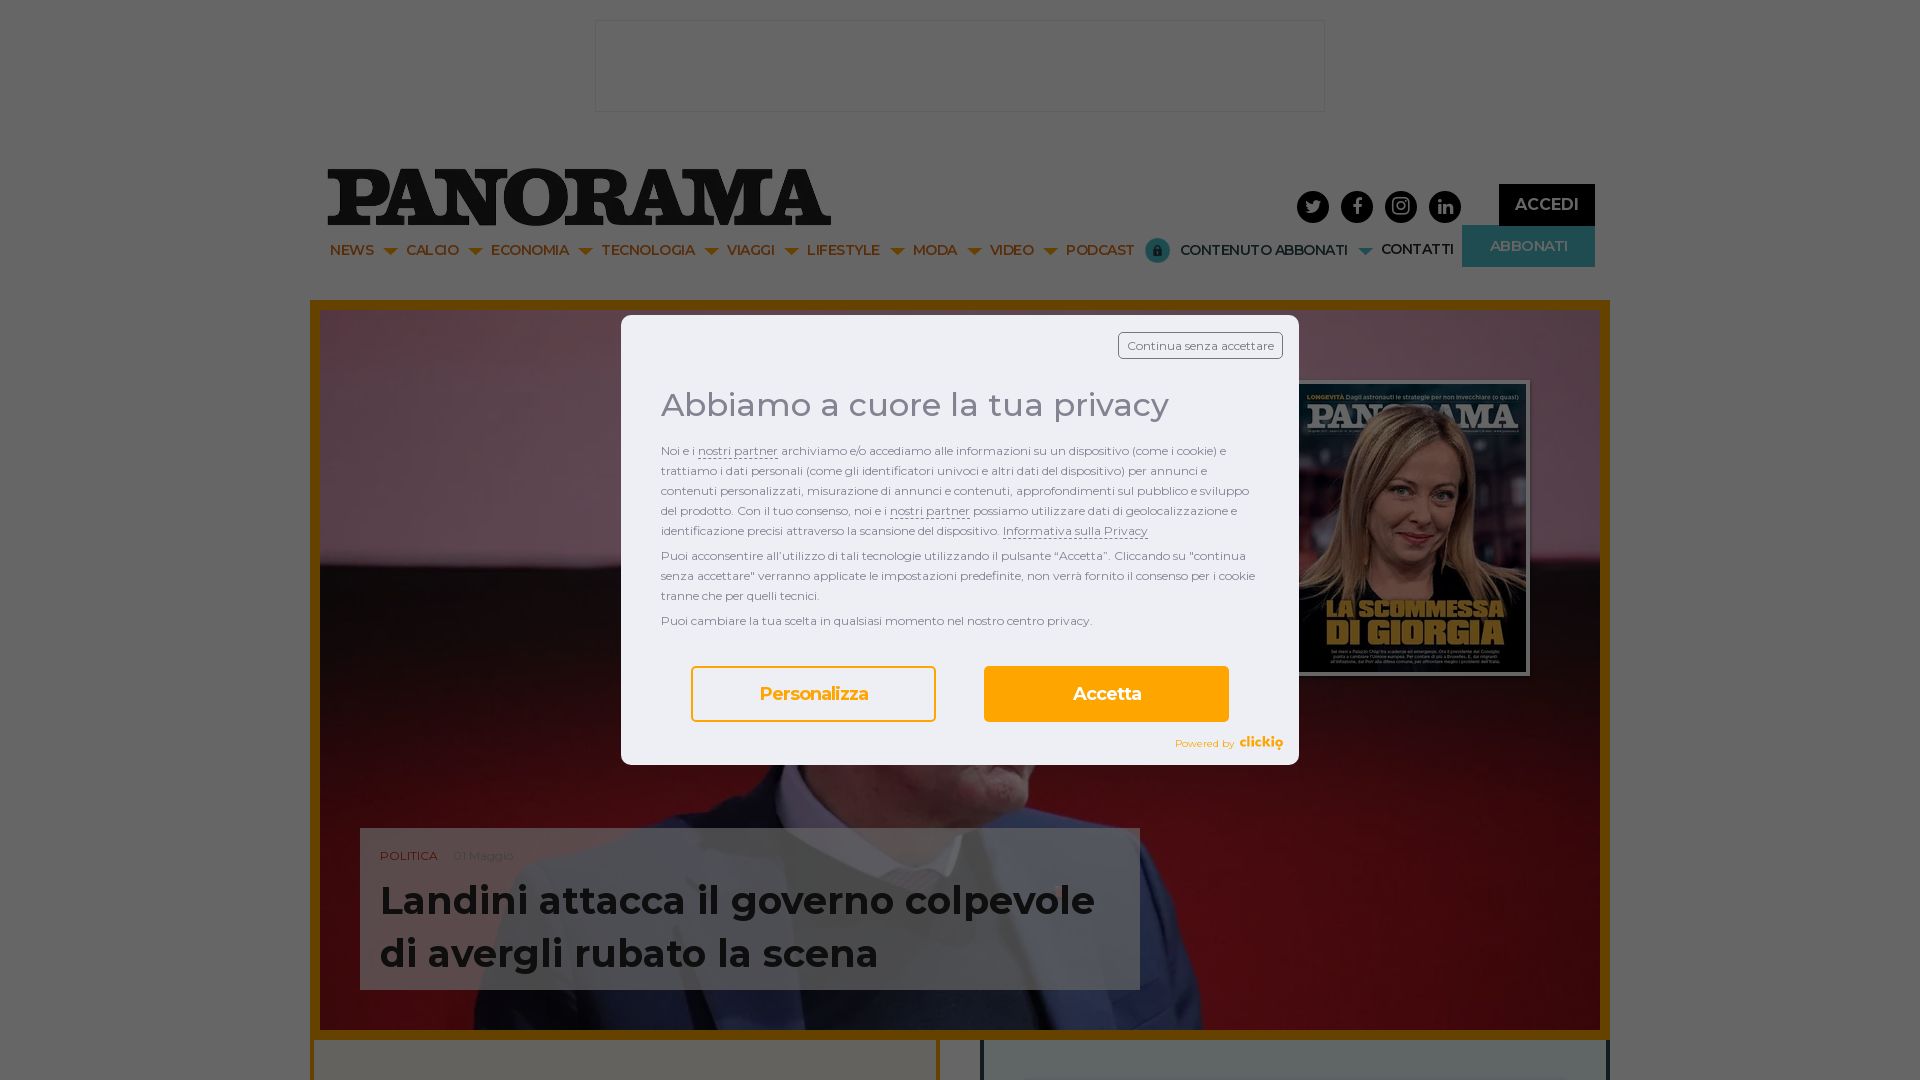 Stato del sito web panorama.it è   ONLINE